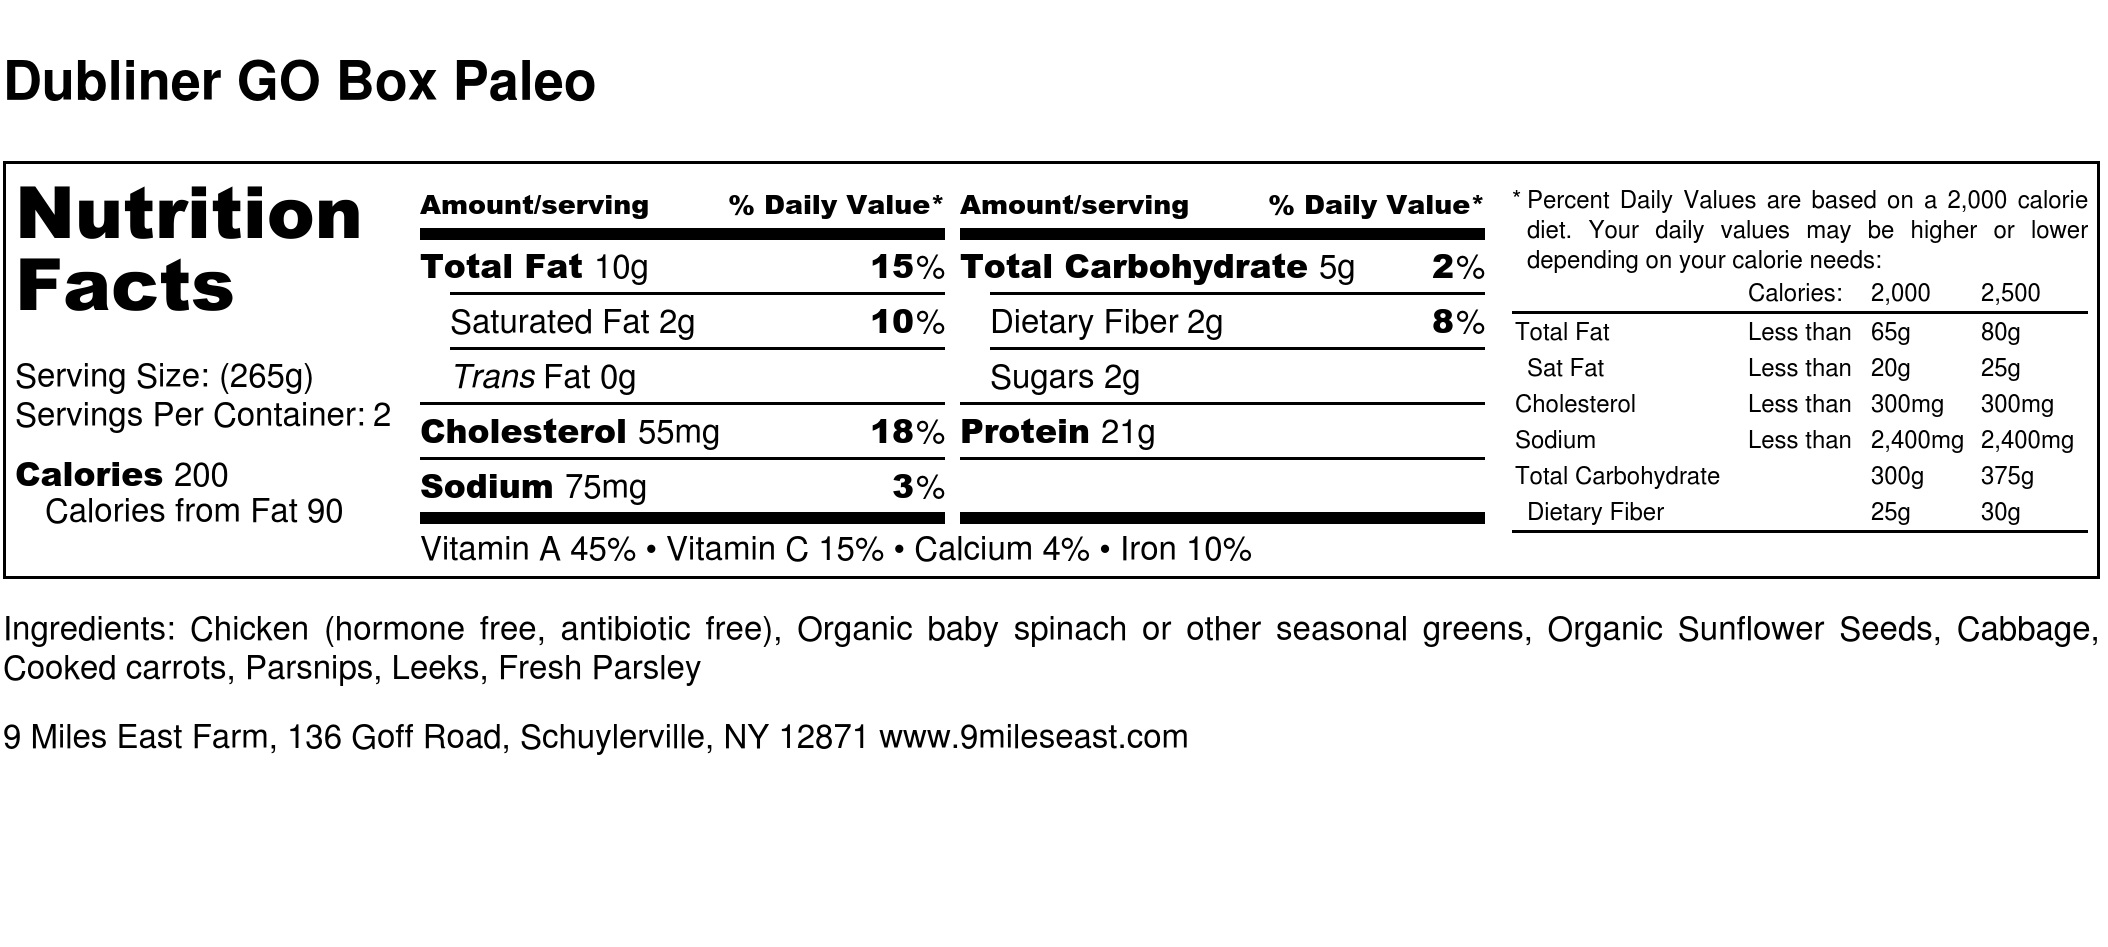 Dubliner GO Box Paleo - Nutrition Label.jpg